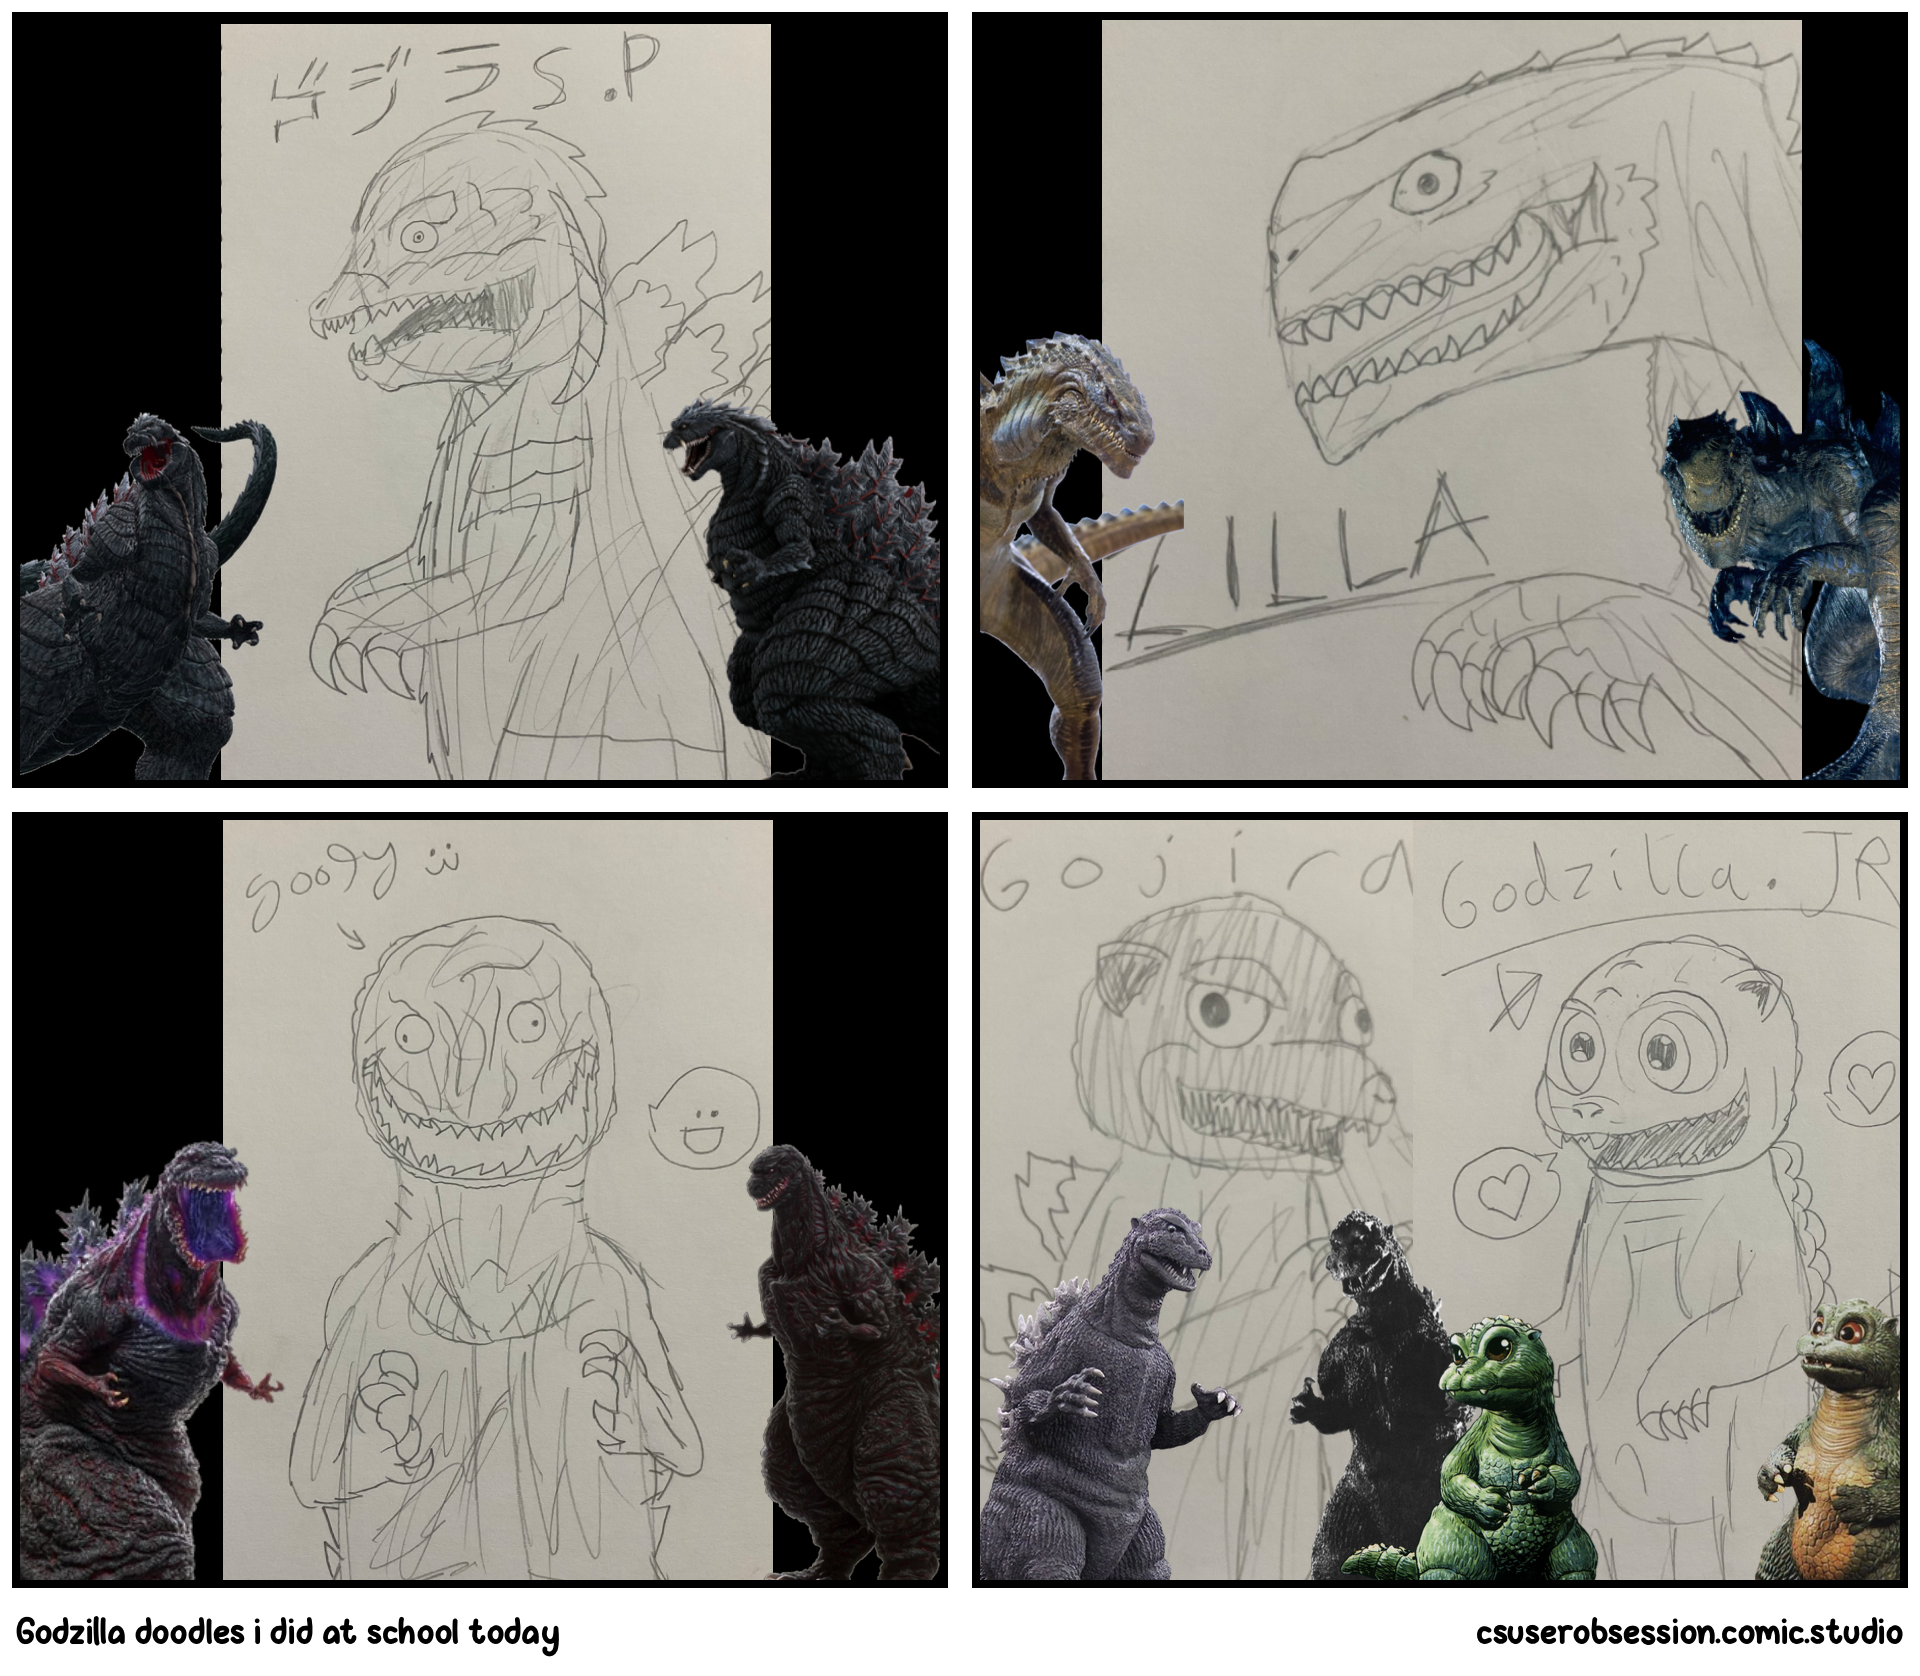 Godzilla doodles i did at school today